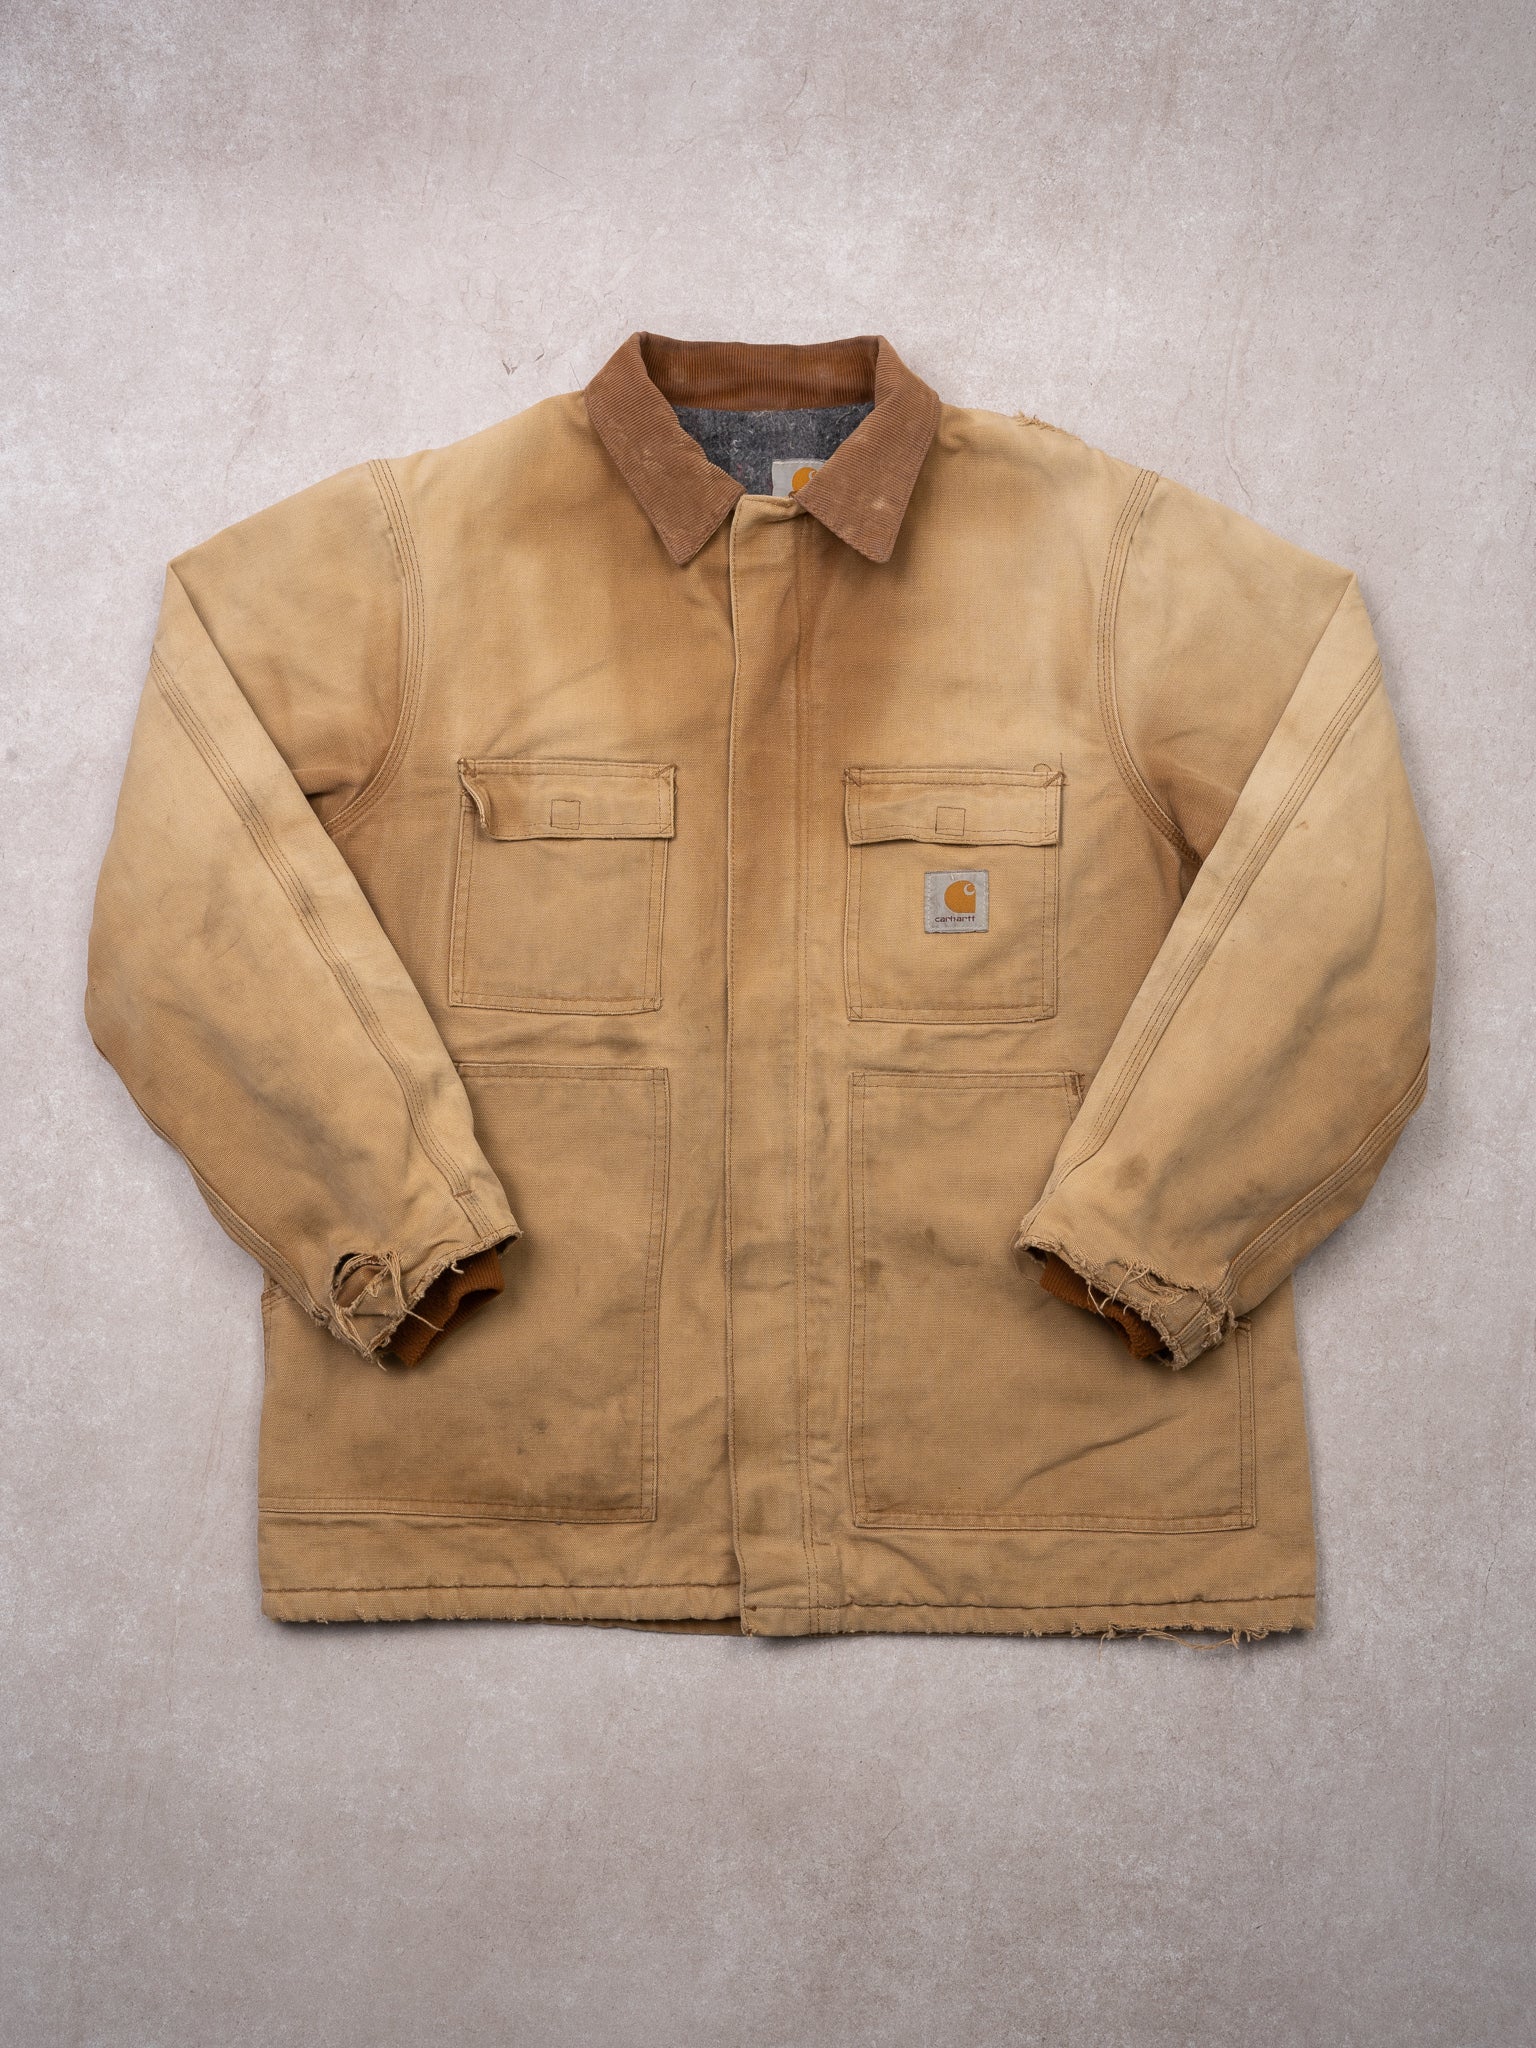 Vintage Carhartt Rugged Beige Lined Jacket (L)